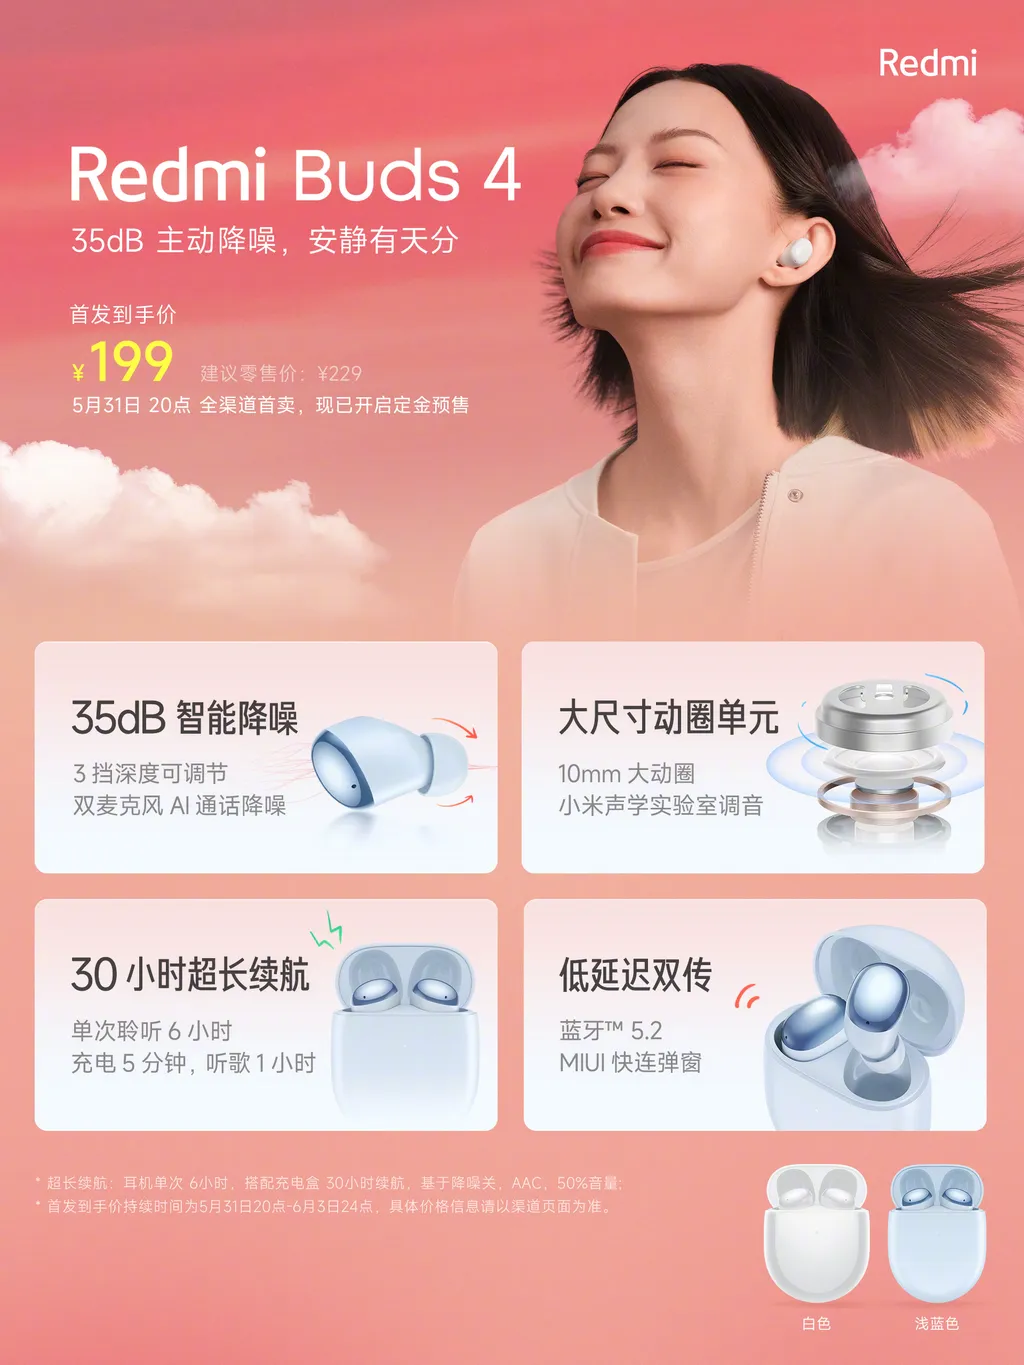 Banner destaca recursos e diferenciais do Redmi Buds 4 com até 30 horas de bateria (Imagem: Reprodução/Xiaomi)